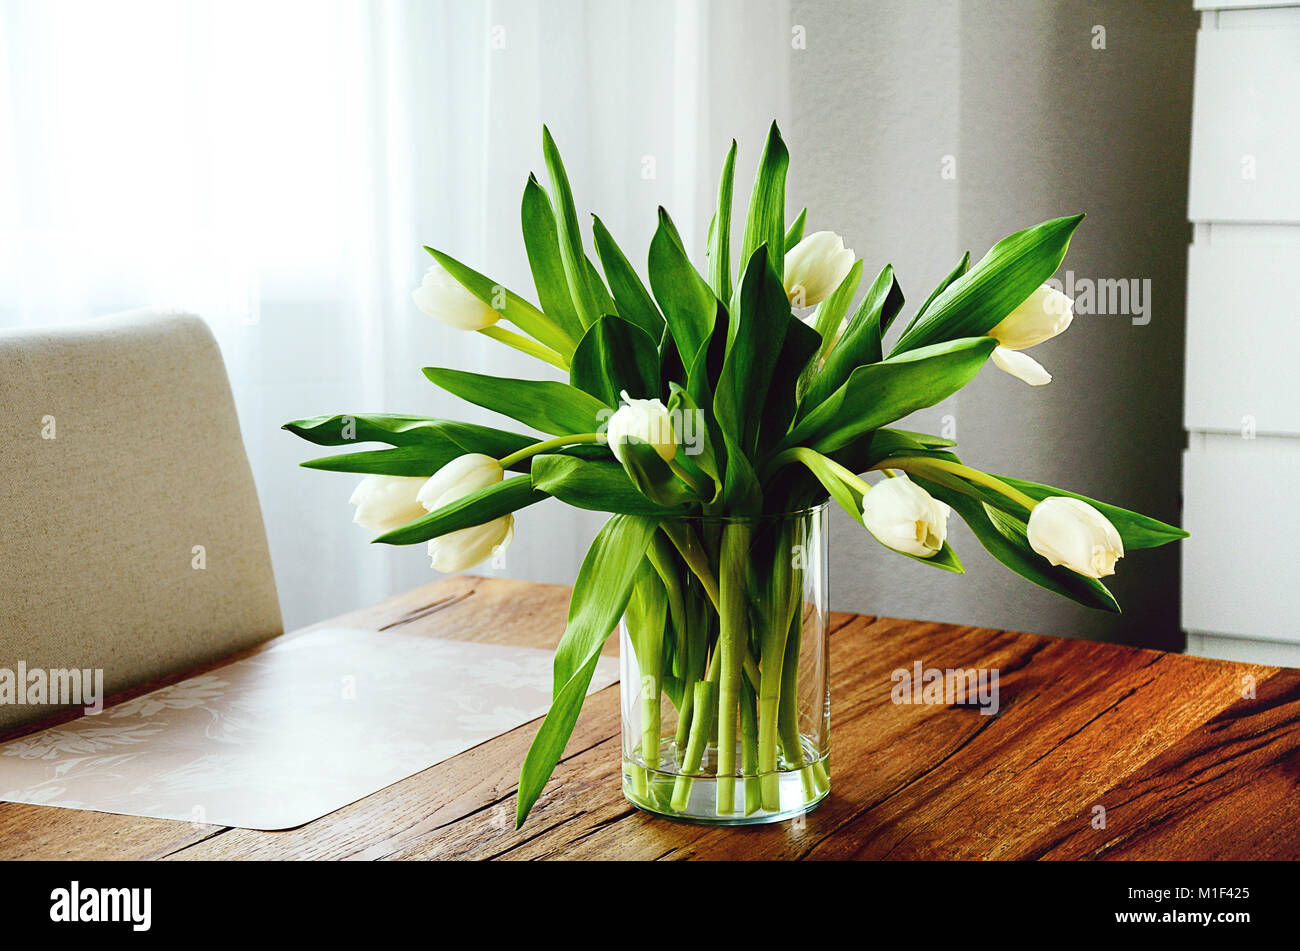 Bündel weißen Tulpen in einer transparenten Glas Vase auf hölzernen Tisch  Stockfotografie - Alamy